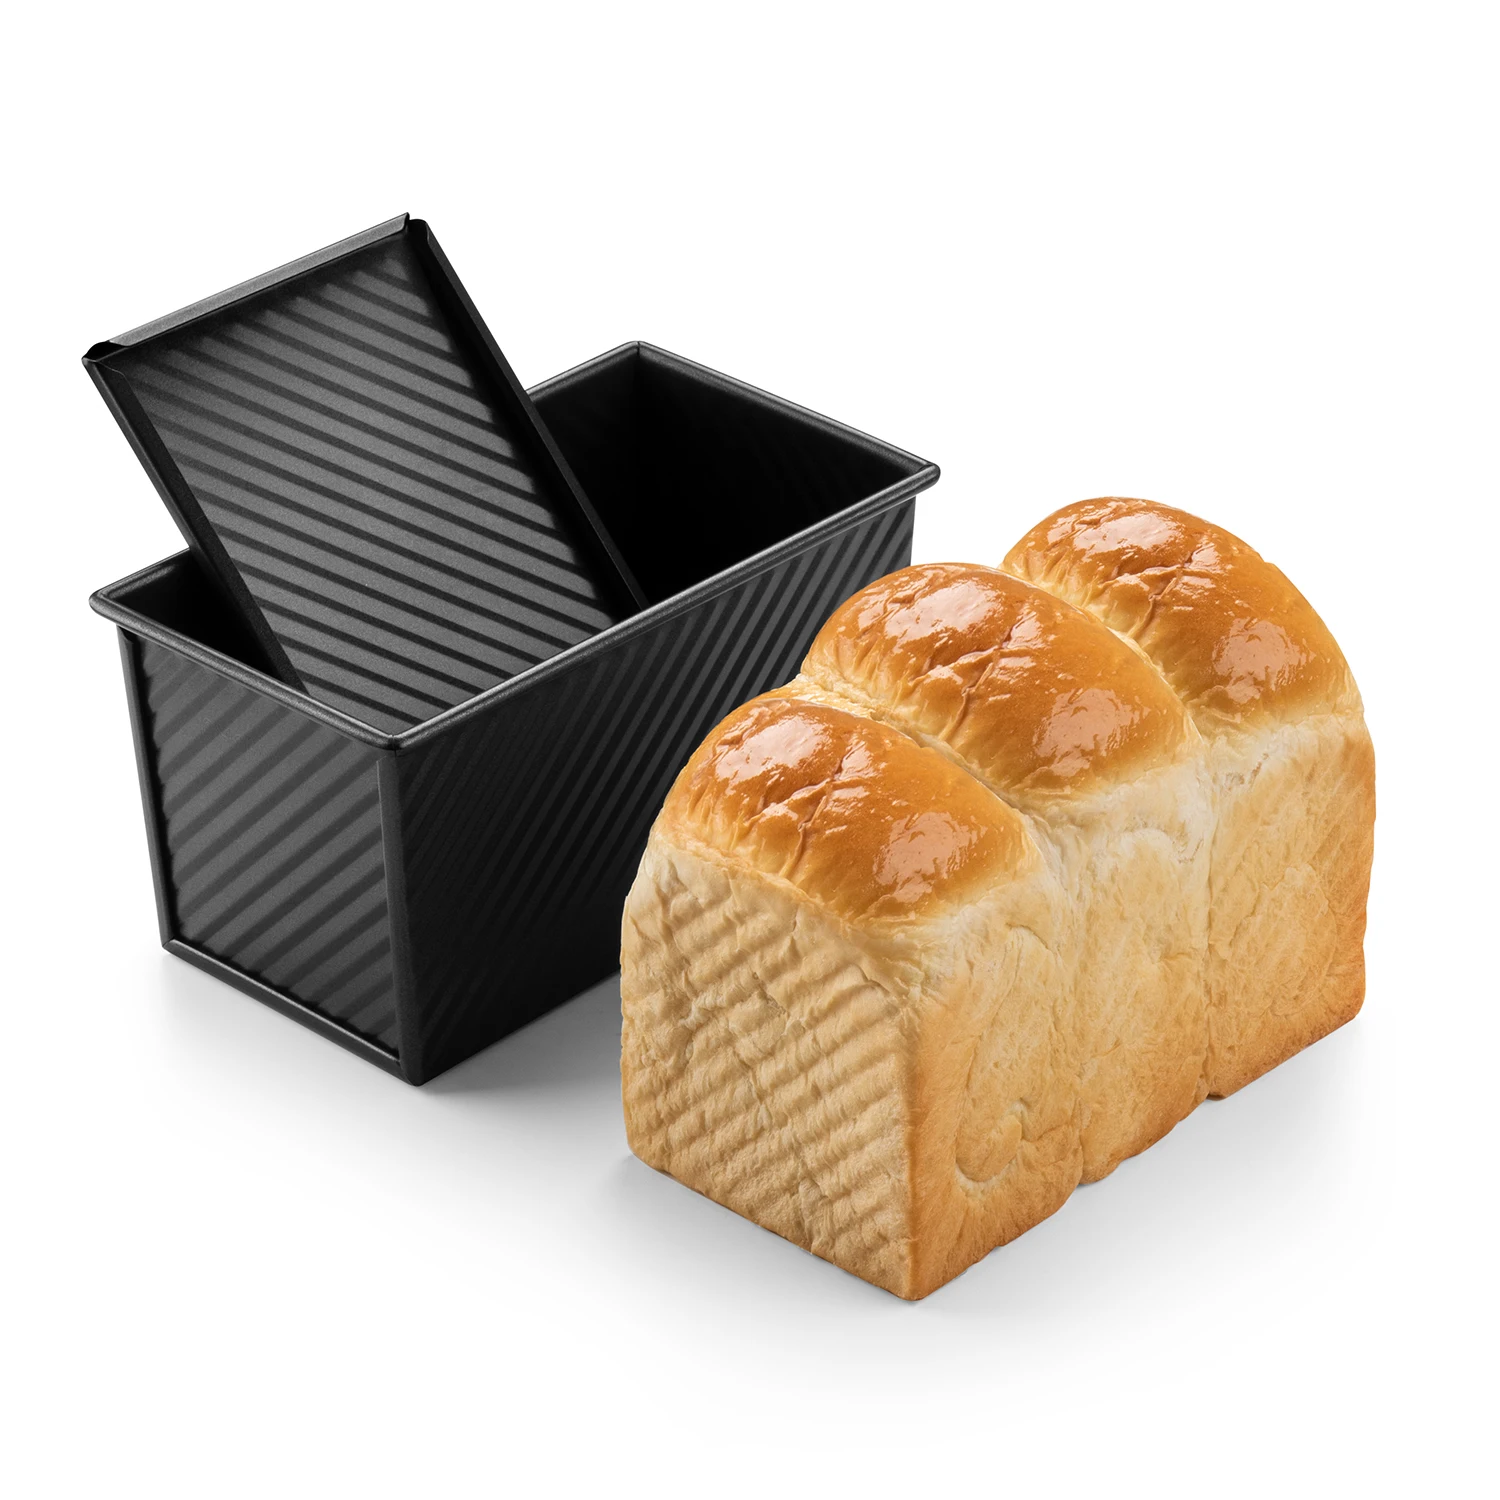 Неприлипающая жаропрочная посуда CHEFMADE из углеродистой стали Форма для хлеба с крышкой